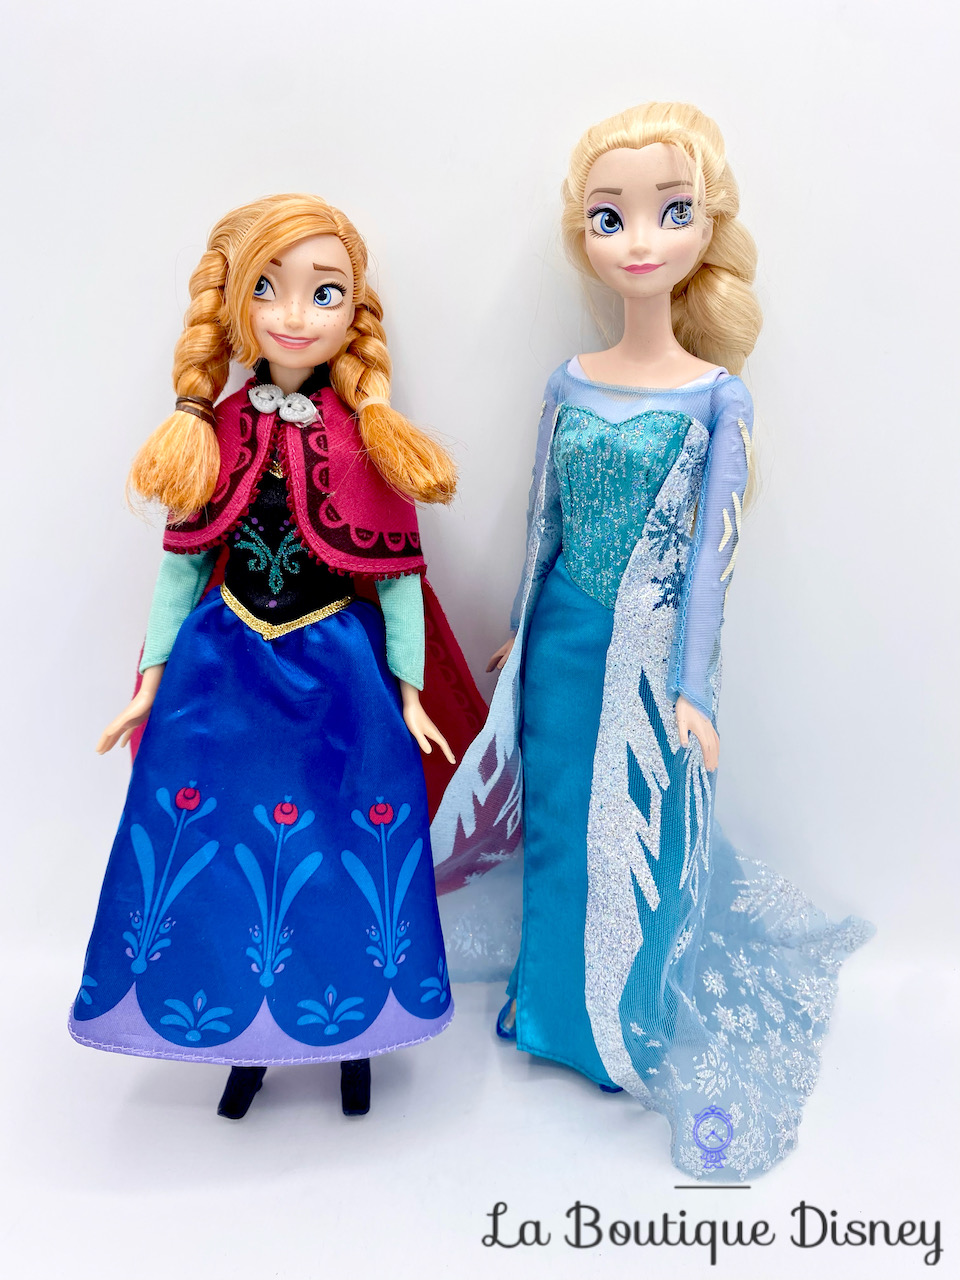 Poupée Elsa - La Reine des Neiges 2 MATTEL : la poupée à Prix